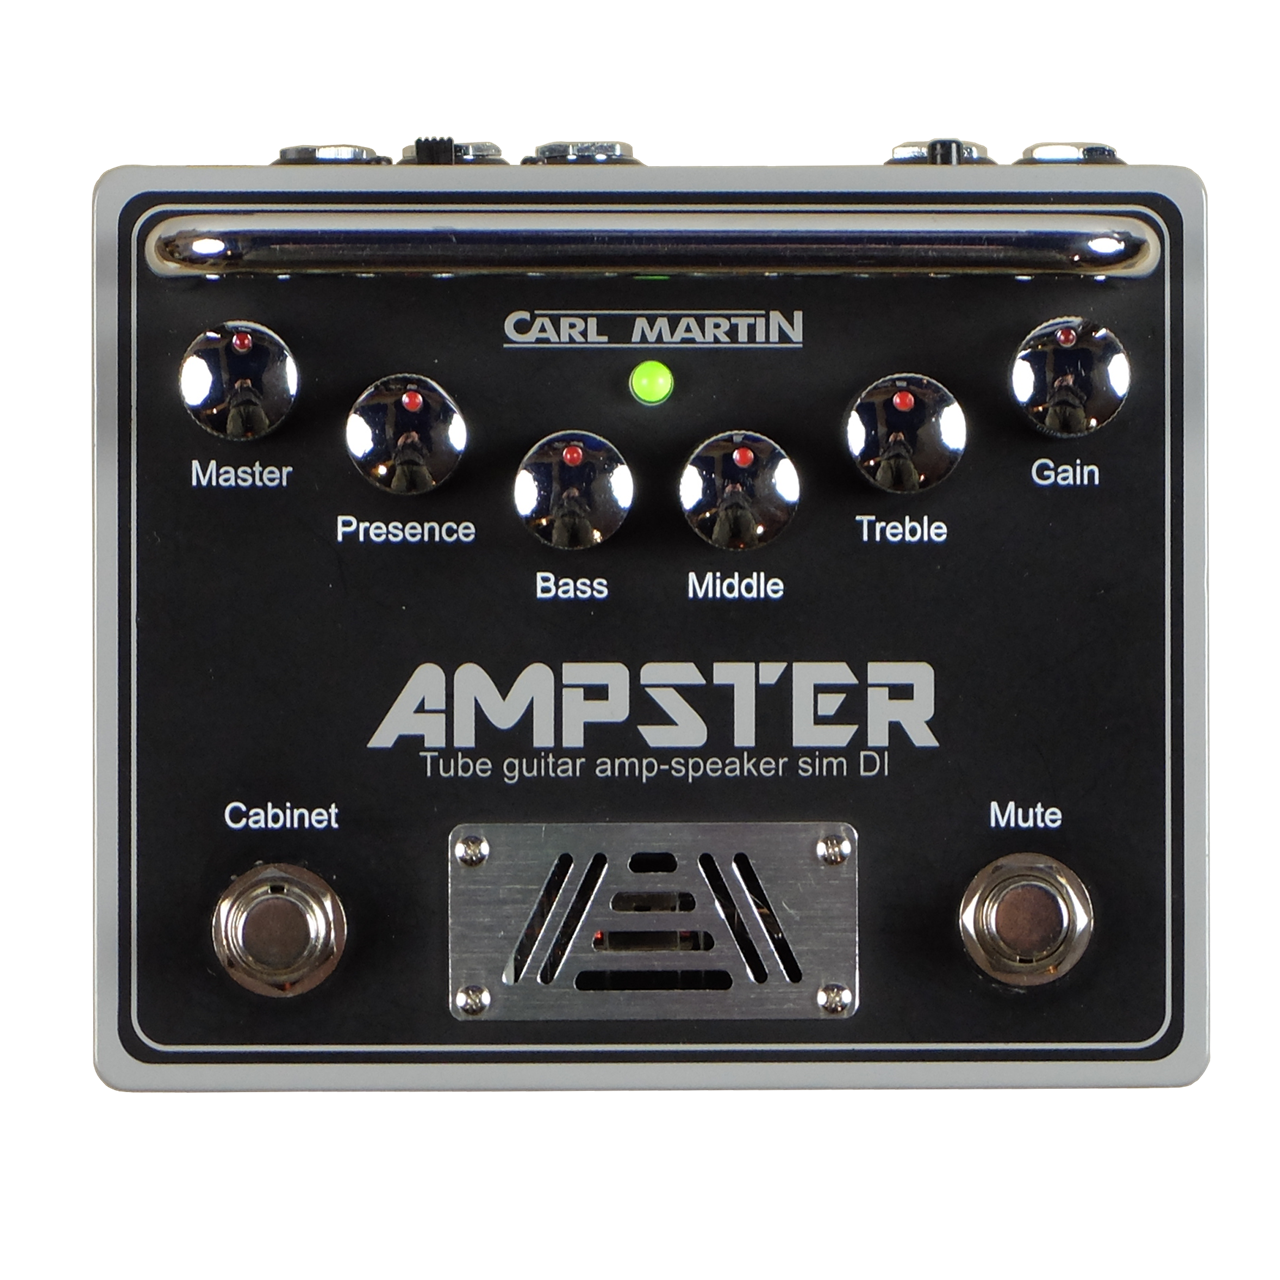 Carl Martin Ampster - Tube Guitar Amp-Speaker Sim DI